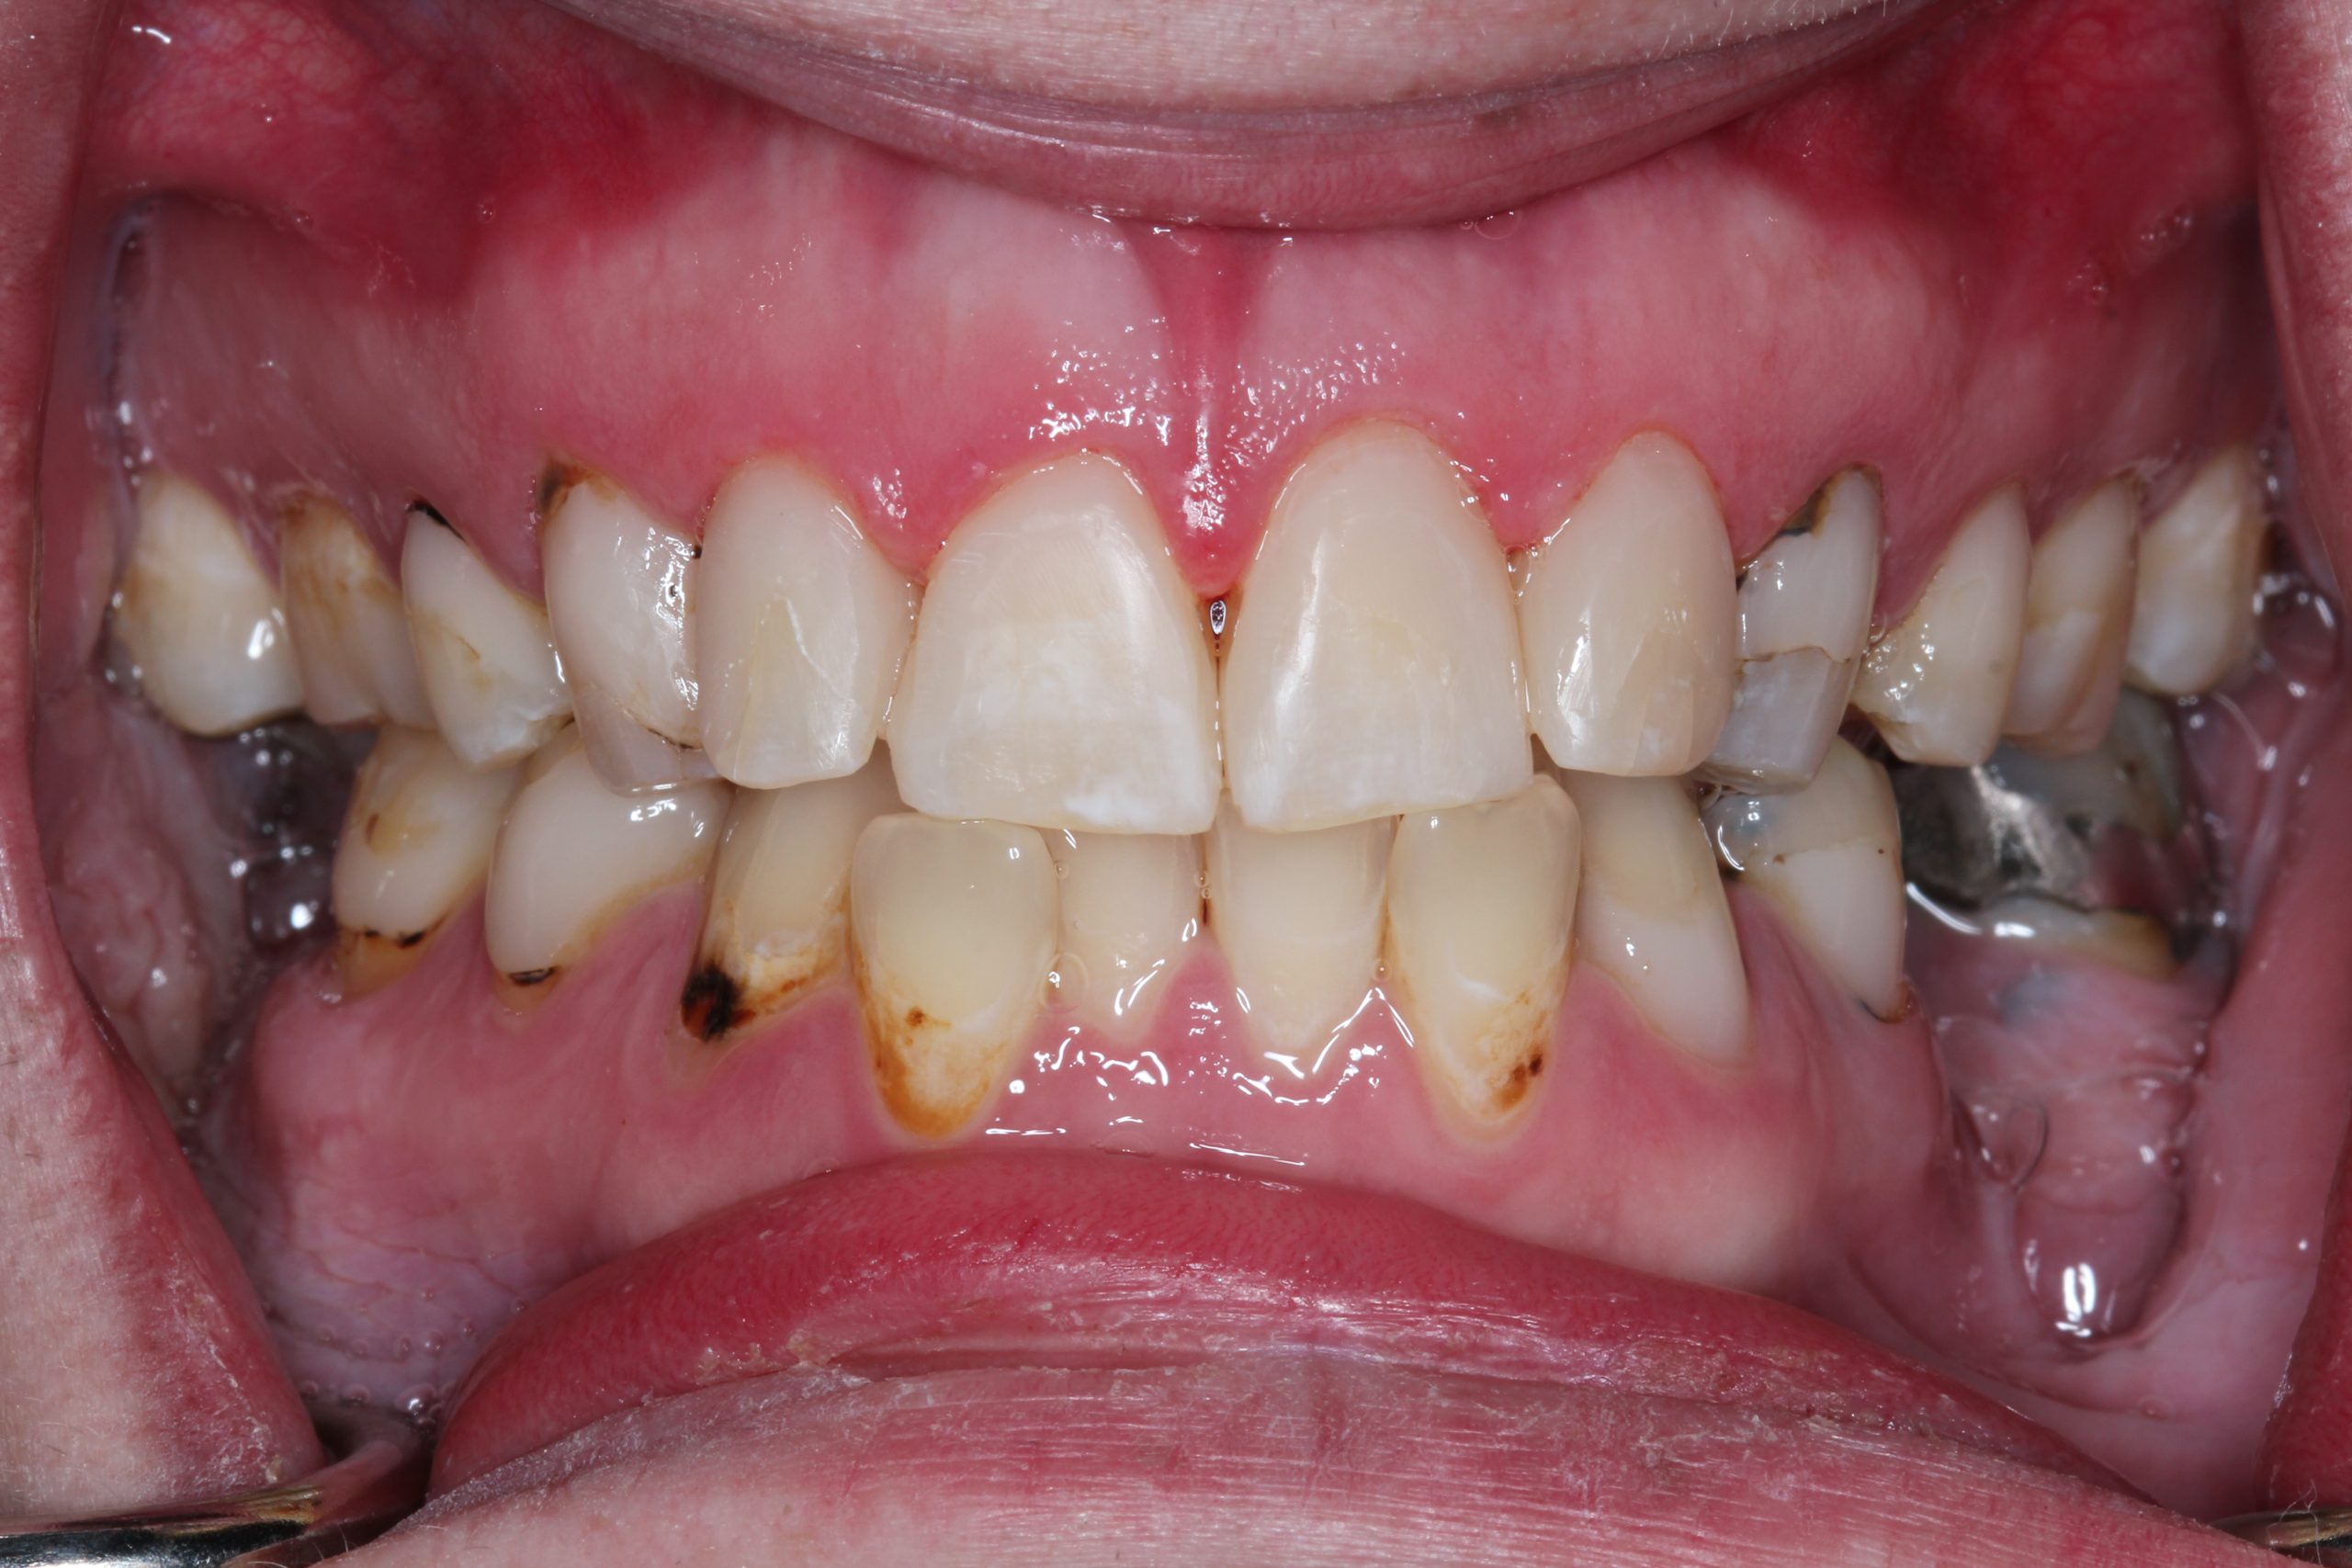 acid erosion on teeth case study